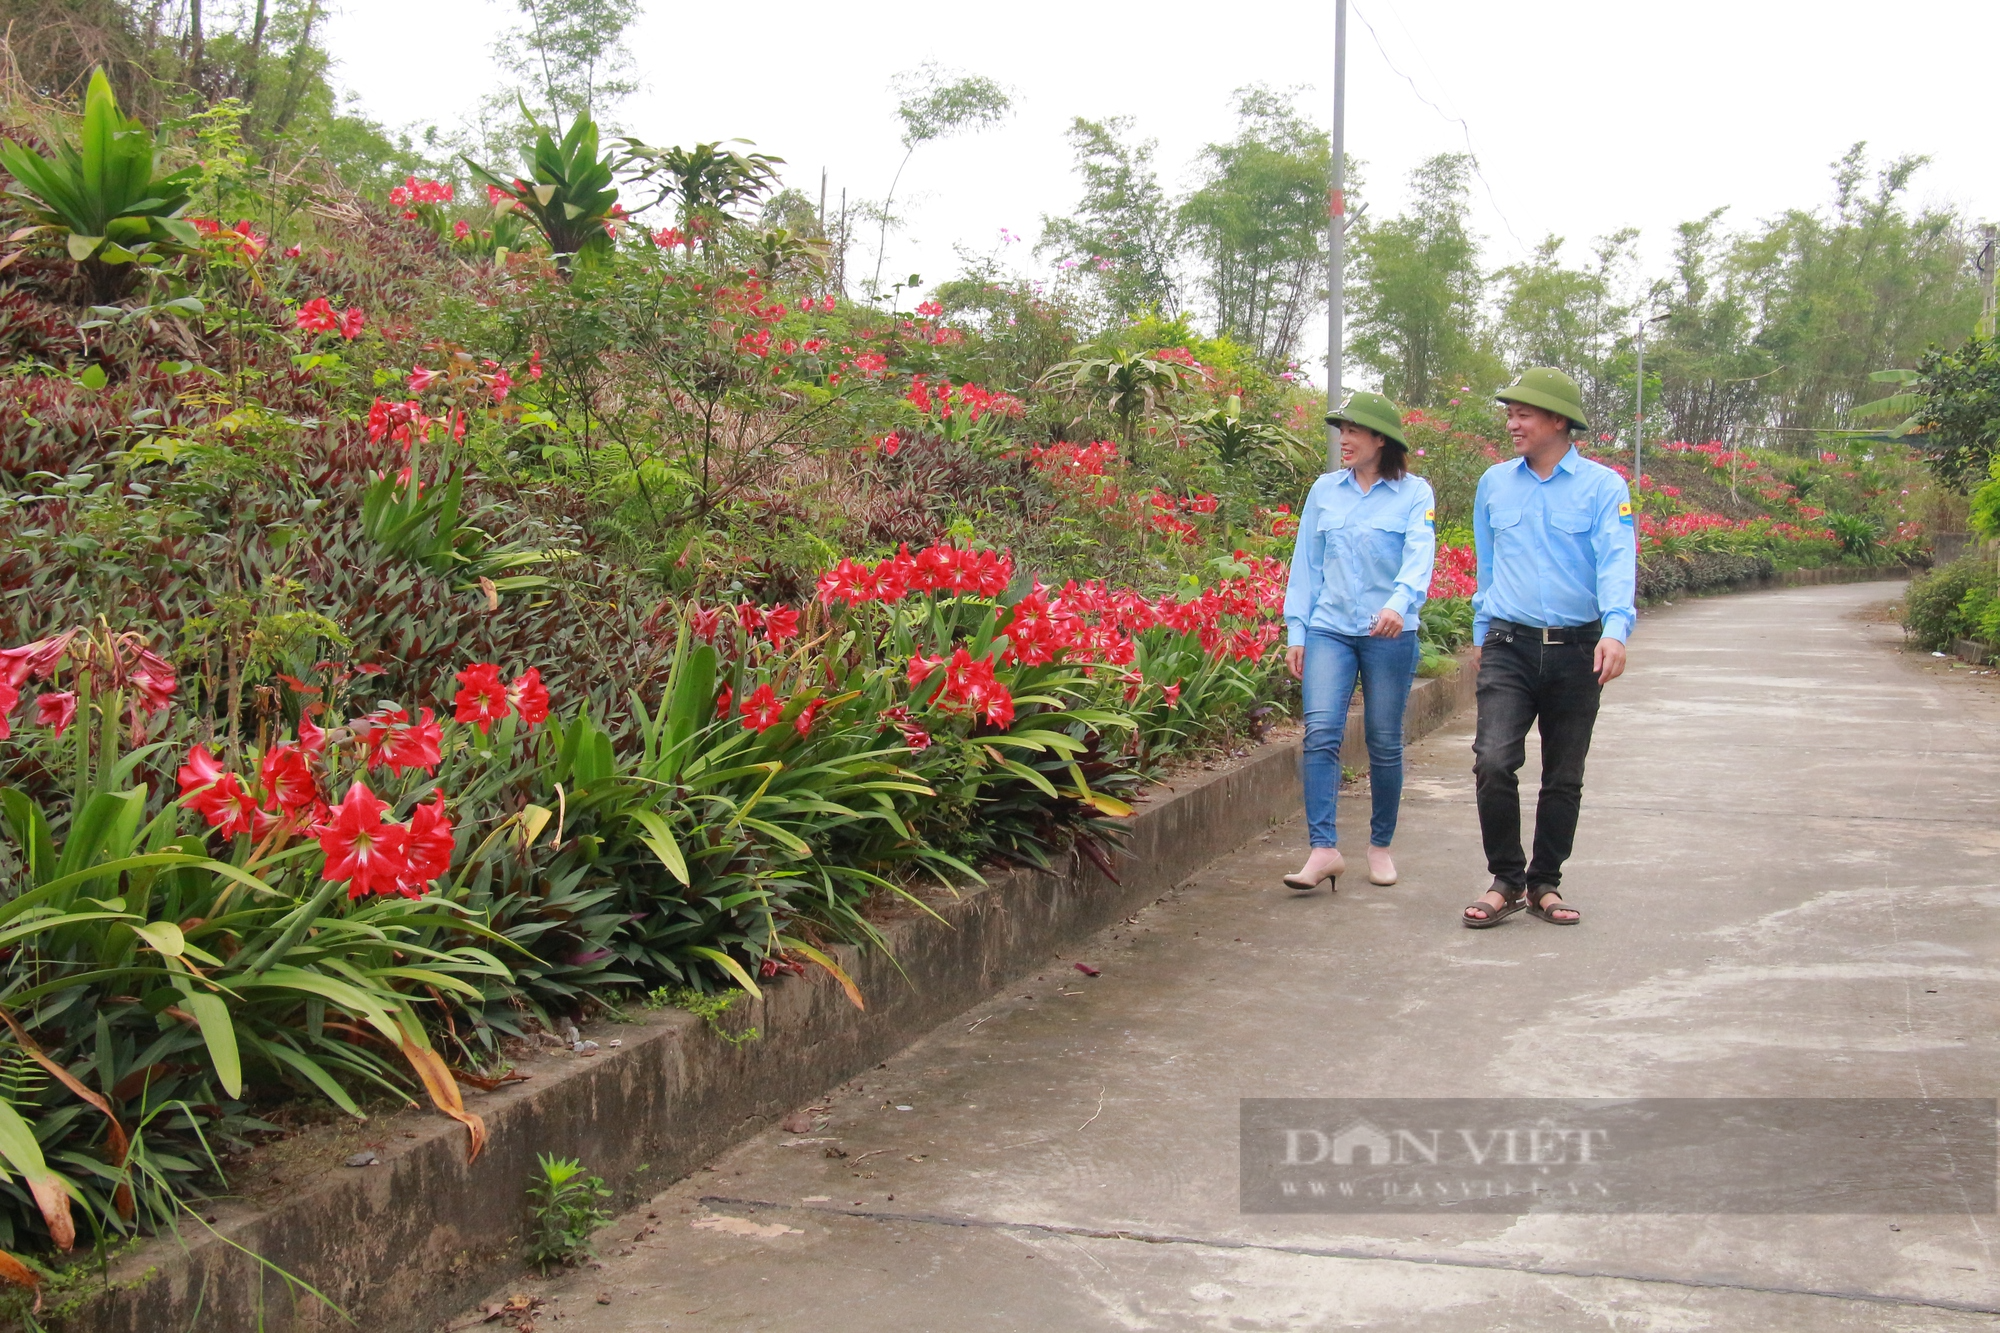 Đê kiểu mẫu nở hoa rực rỡ, làm đẹp cảnh quan nông thôn mới ở Nam Định - Ảnh 3.